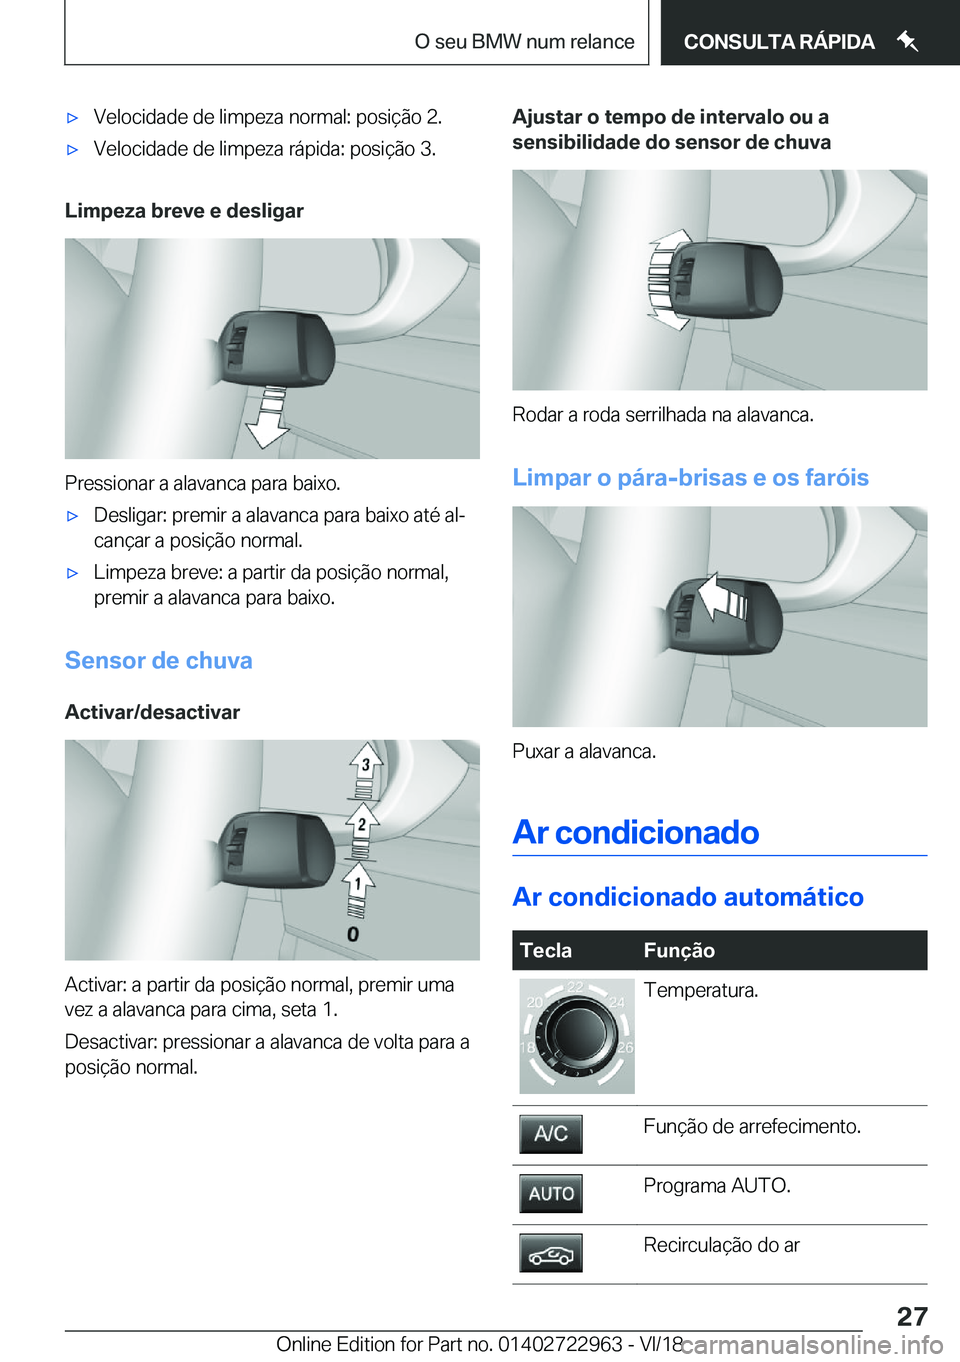 BMW M4 2019  Manual do condutor (in Portuguese) 'x�V�e�l�o�c�i�d�a�d�e��d�e��l�i�m�p�e�z�a��n�o�r�m�a�l�:��p�o�s�i�